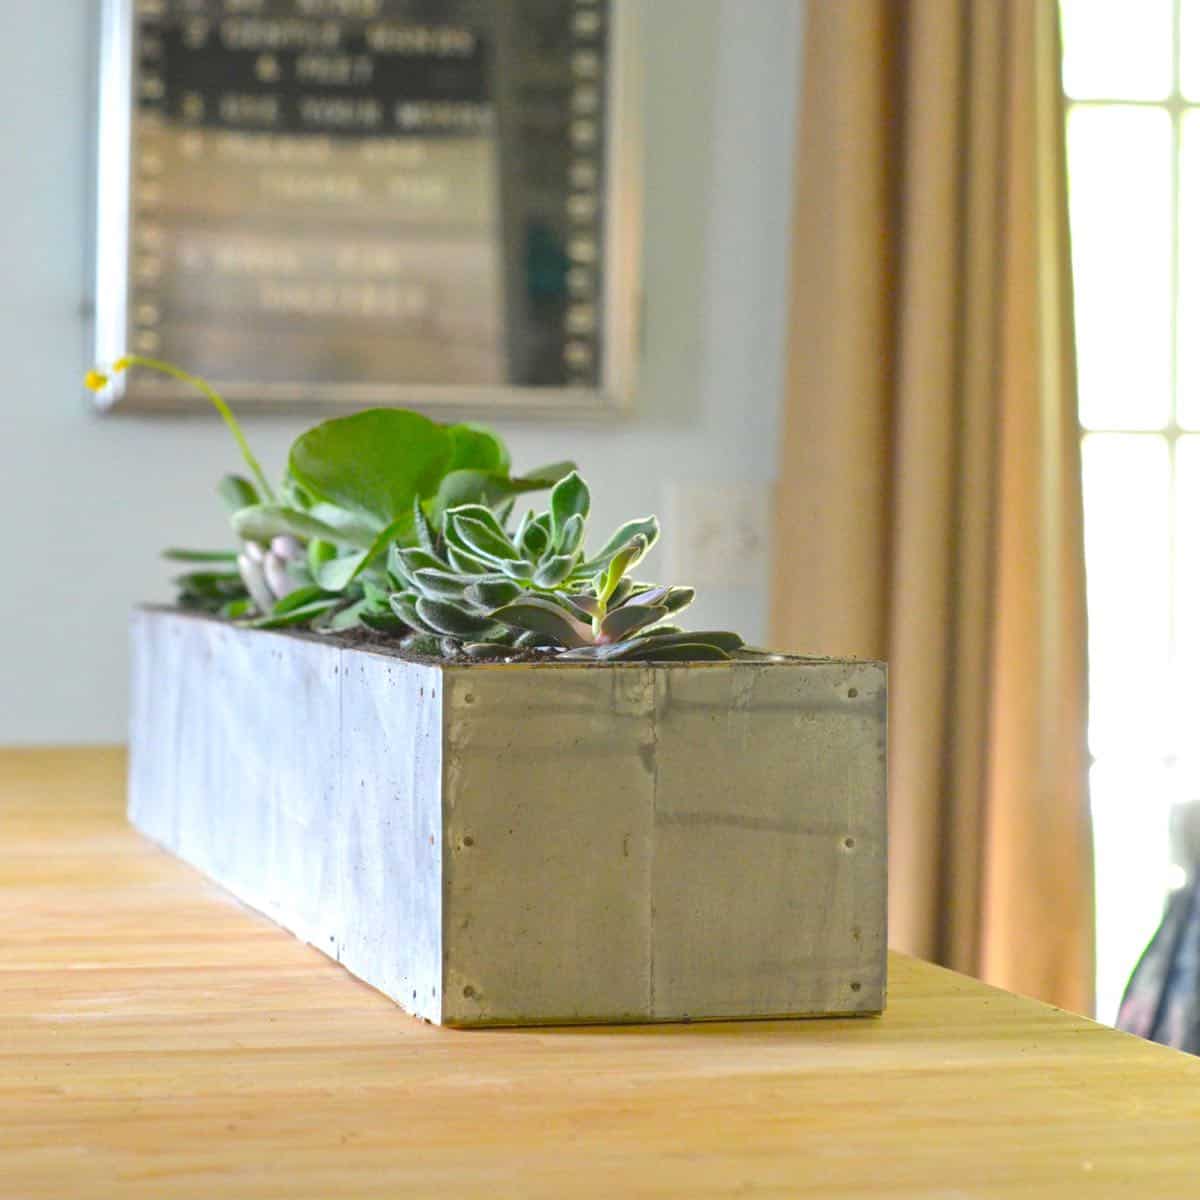 DIY succulent planter with zinc patina